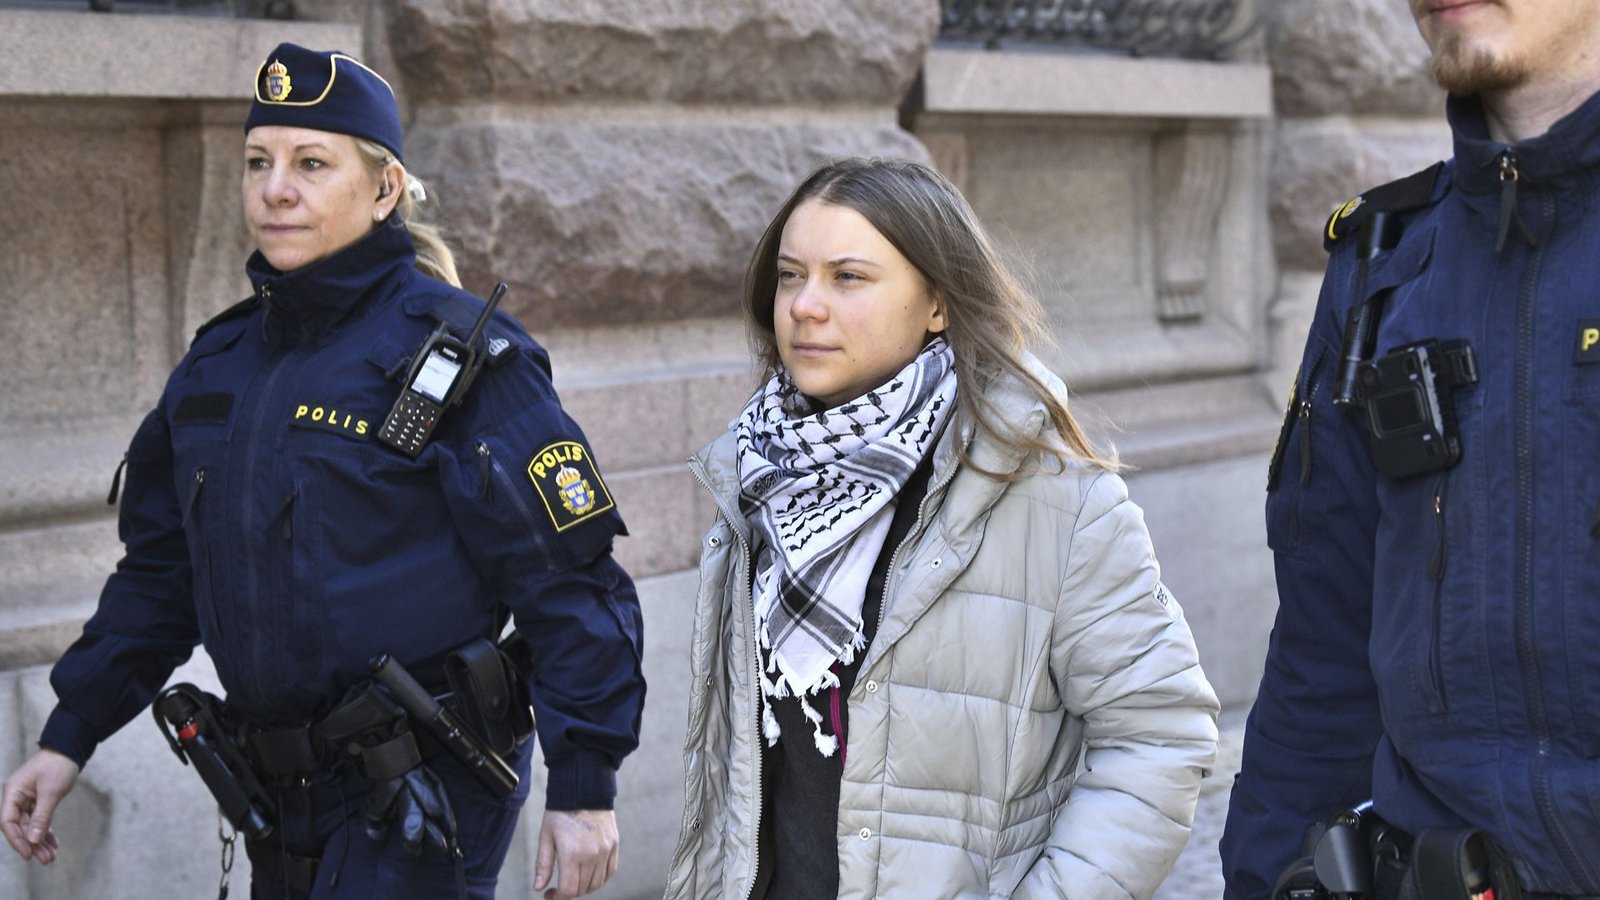 Die Aktivistin hatte ab dem 11. März für mehrere Tage den Haupteingang des schwedischen Parlaments blockiert. (Archivbild)Foto: dpa/Samuel Steén